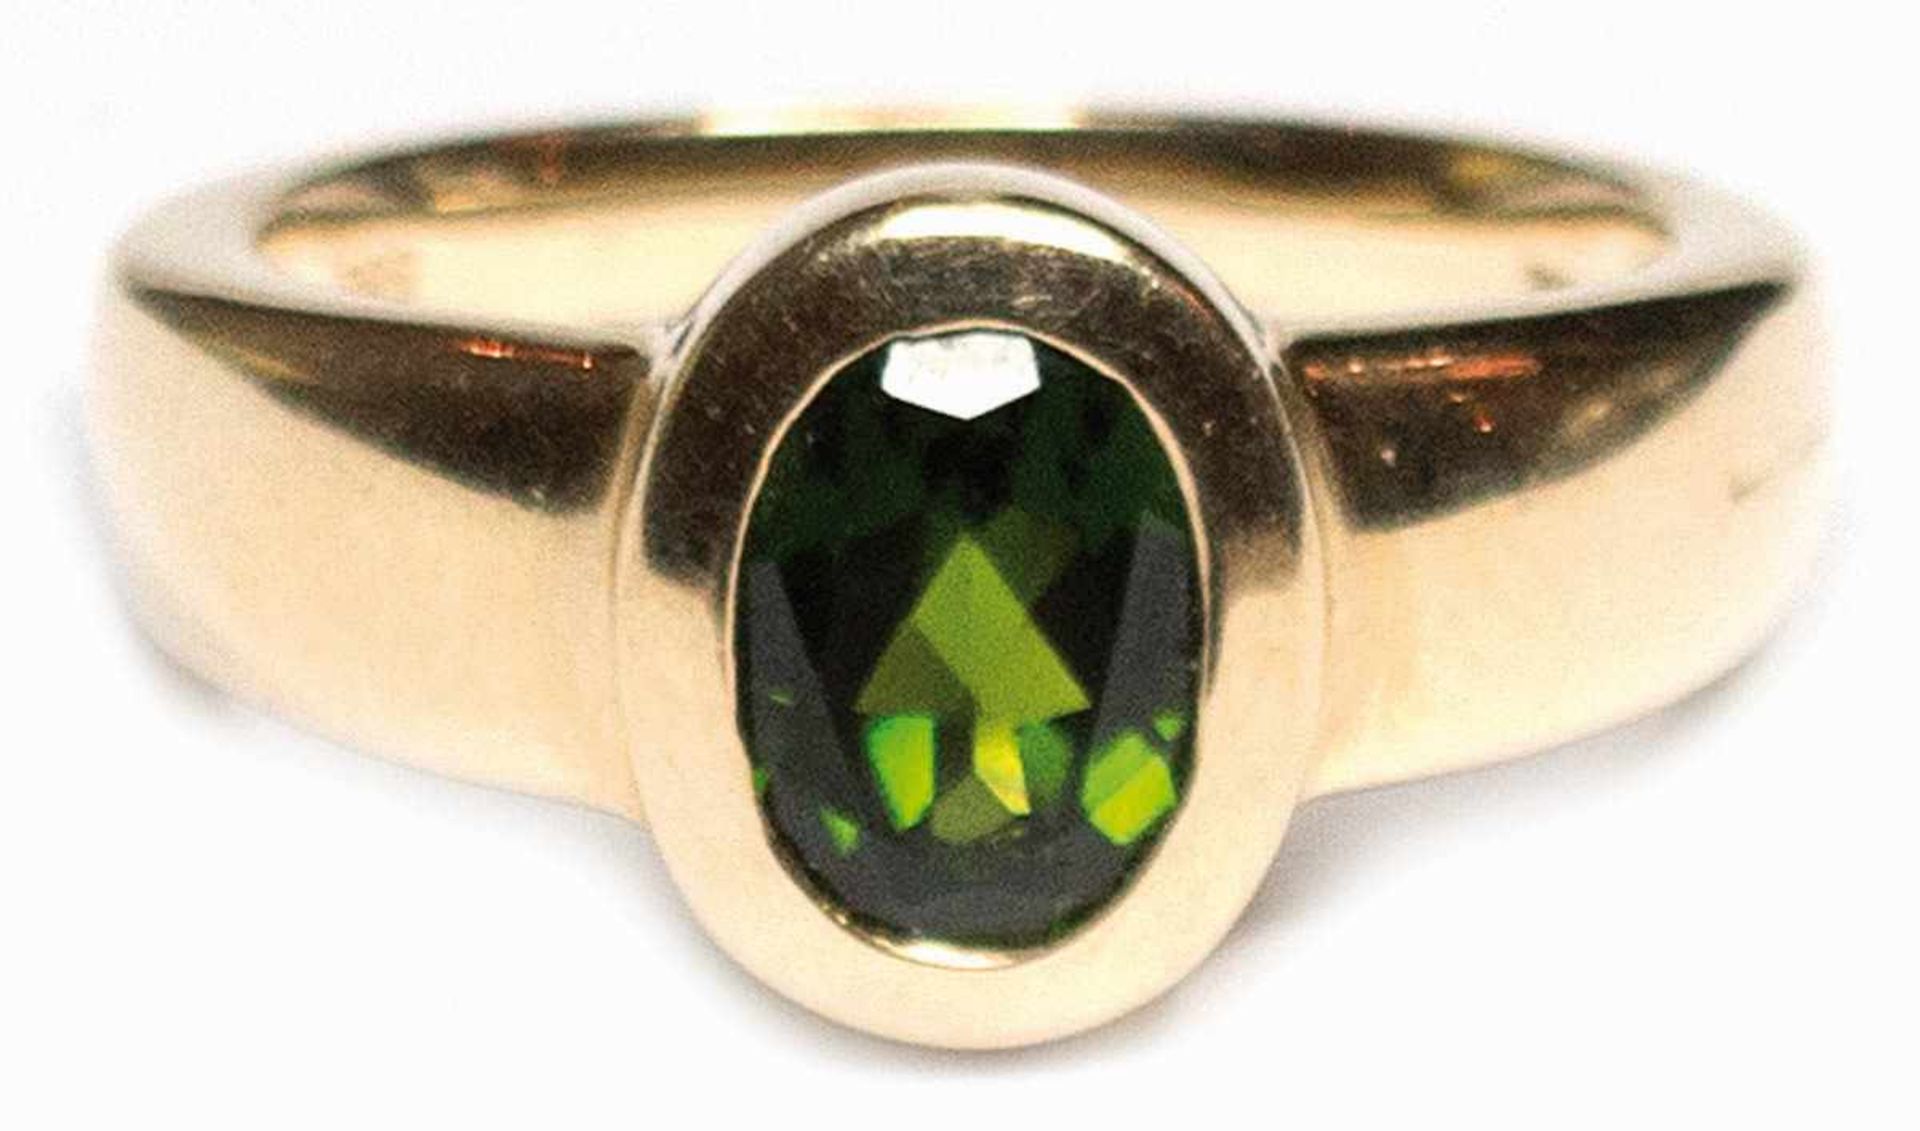 Ring, 585er GG, sehr guter grüner Turmalin von ca. 1,0 ct., Gew. 5,5 g, RG 56,Innendurchmesser 17,